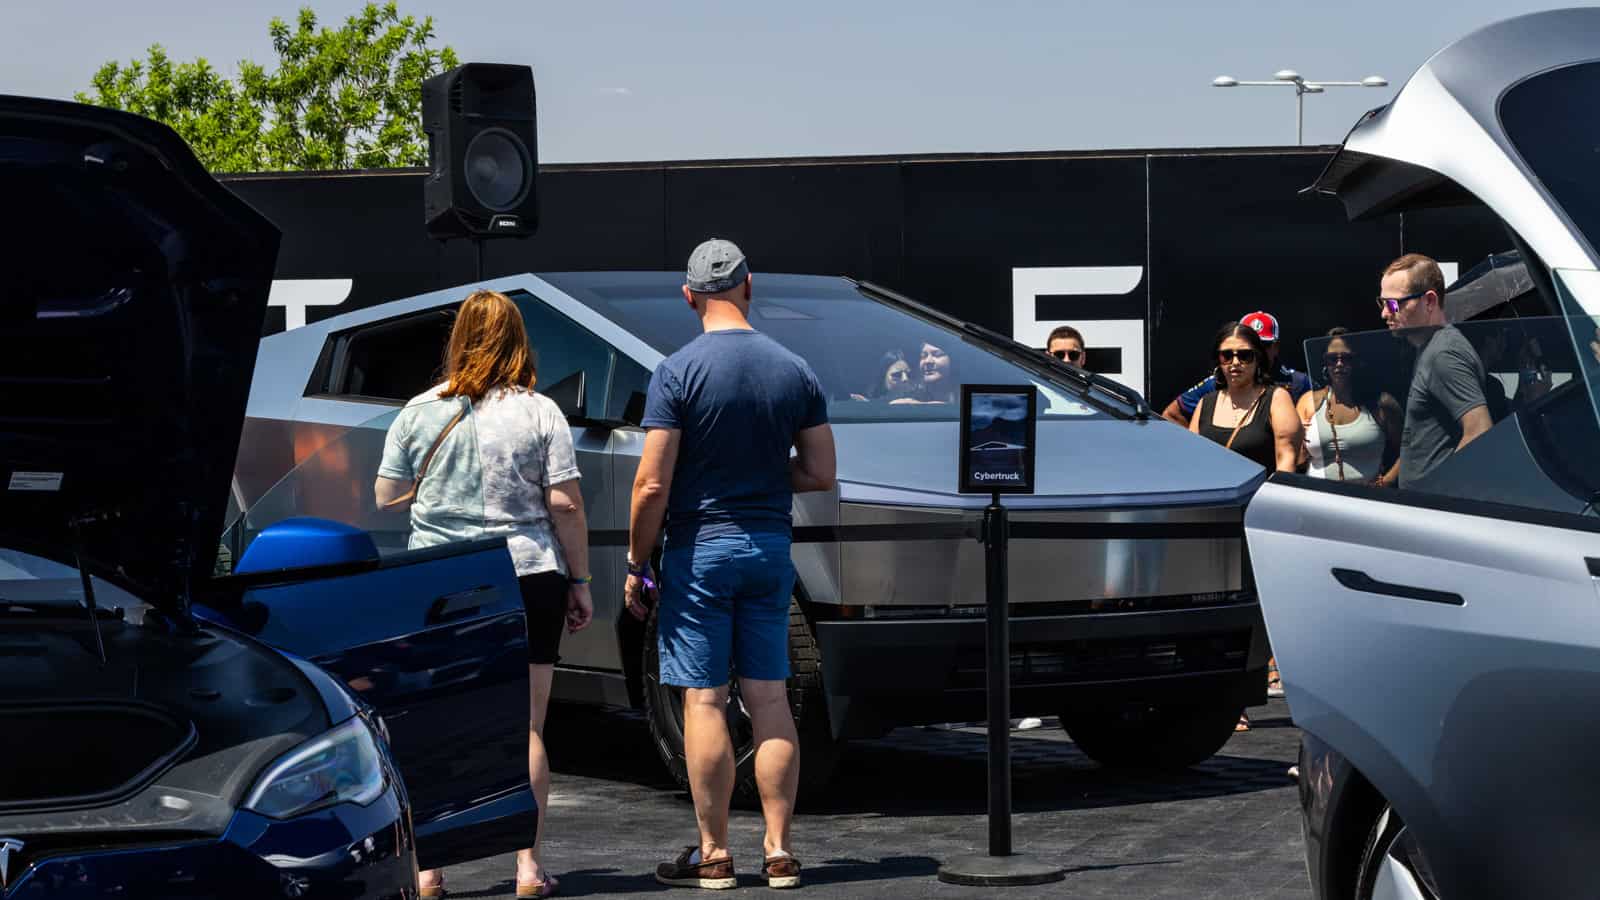 Tesla Cybertruck at Electrify Expo Phoenix